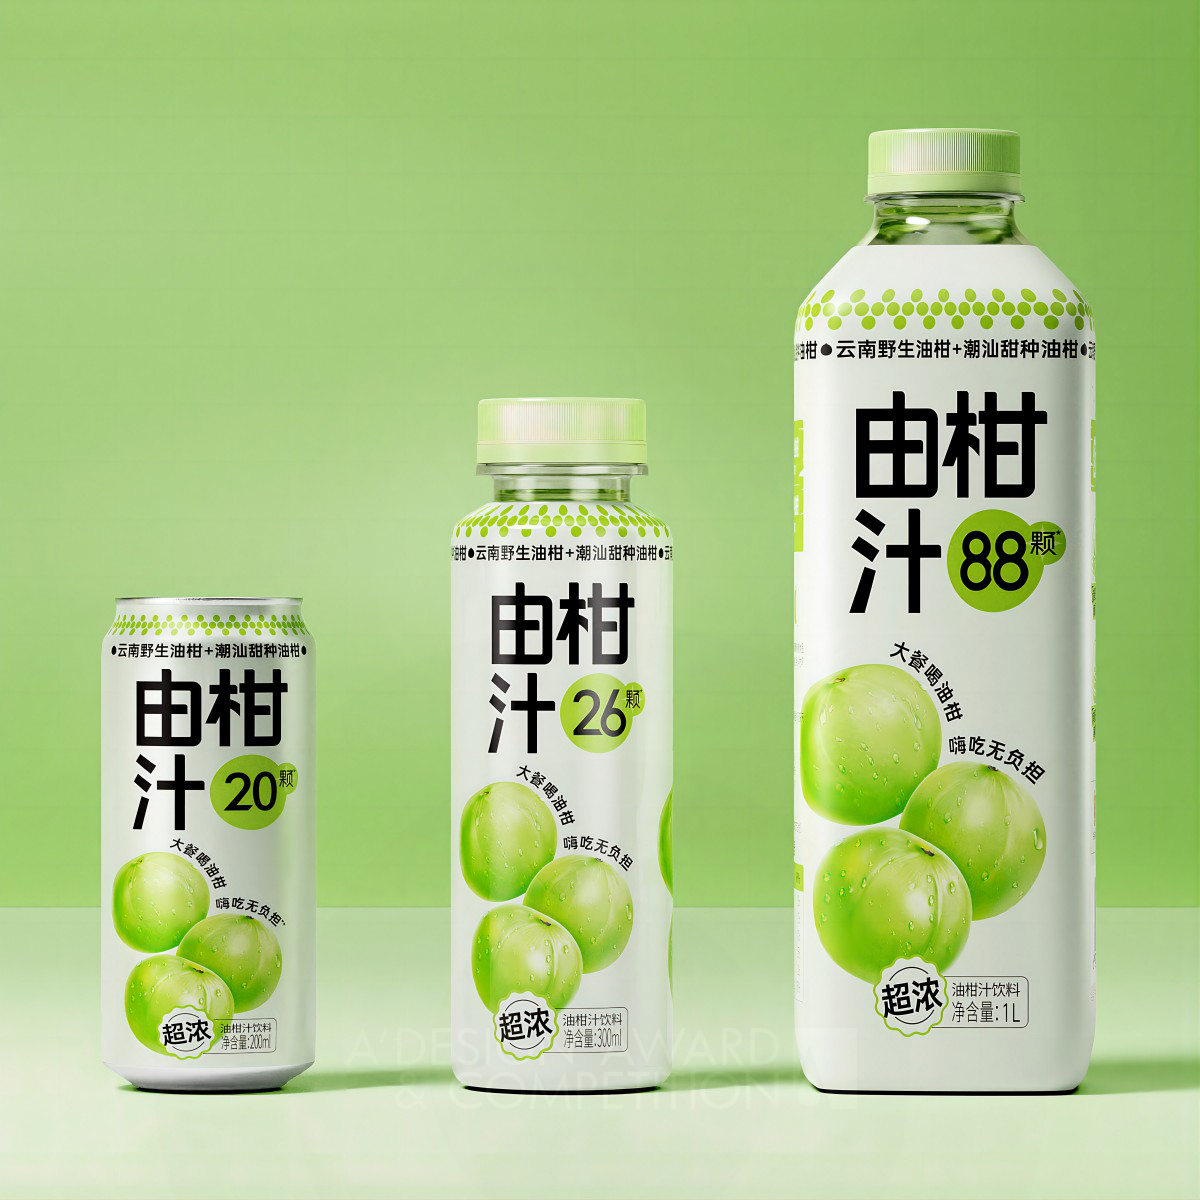 Eastroc Amla Juice Beverage Packaging by Guangzhou ID Advertising Co.,Ltd Iron Packaging Design Award Winner 2024 